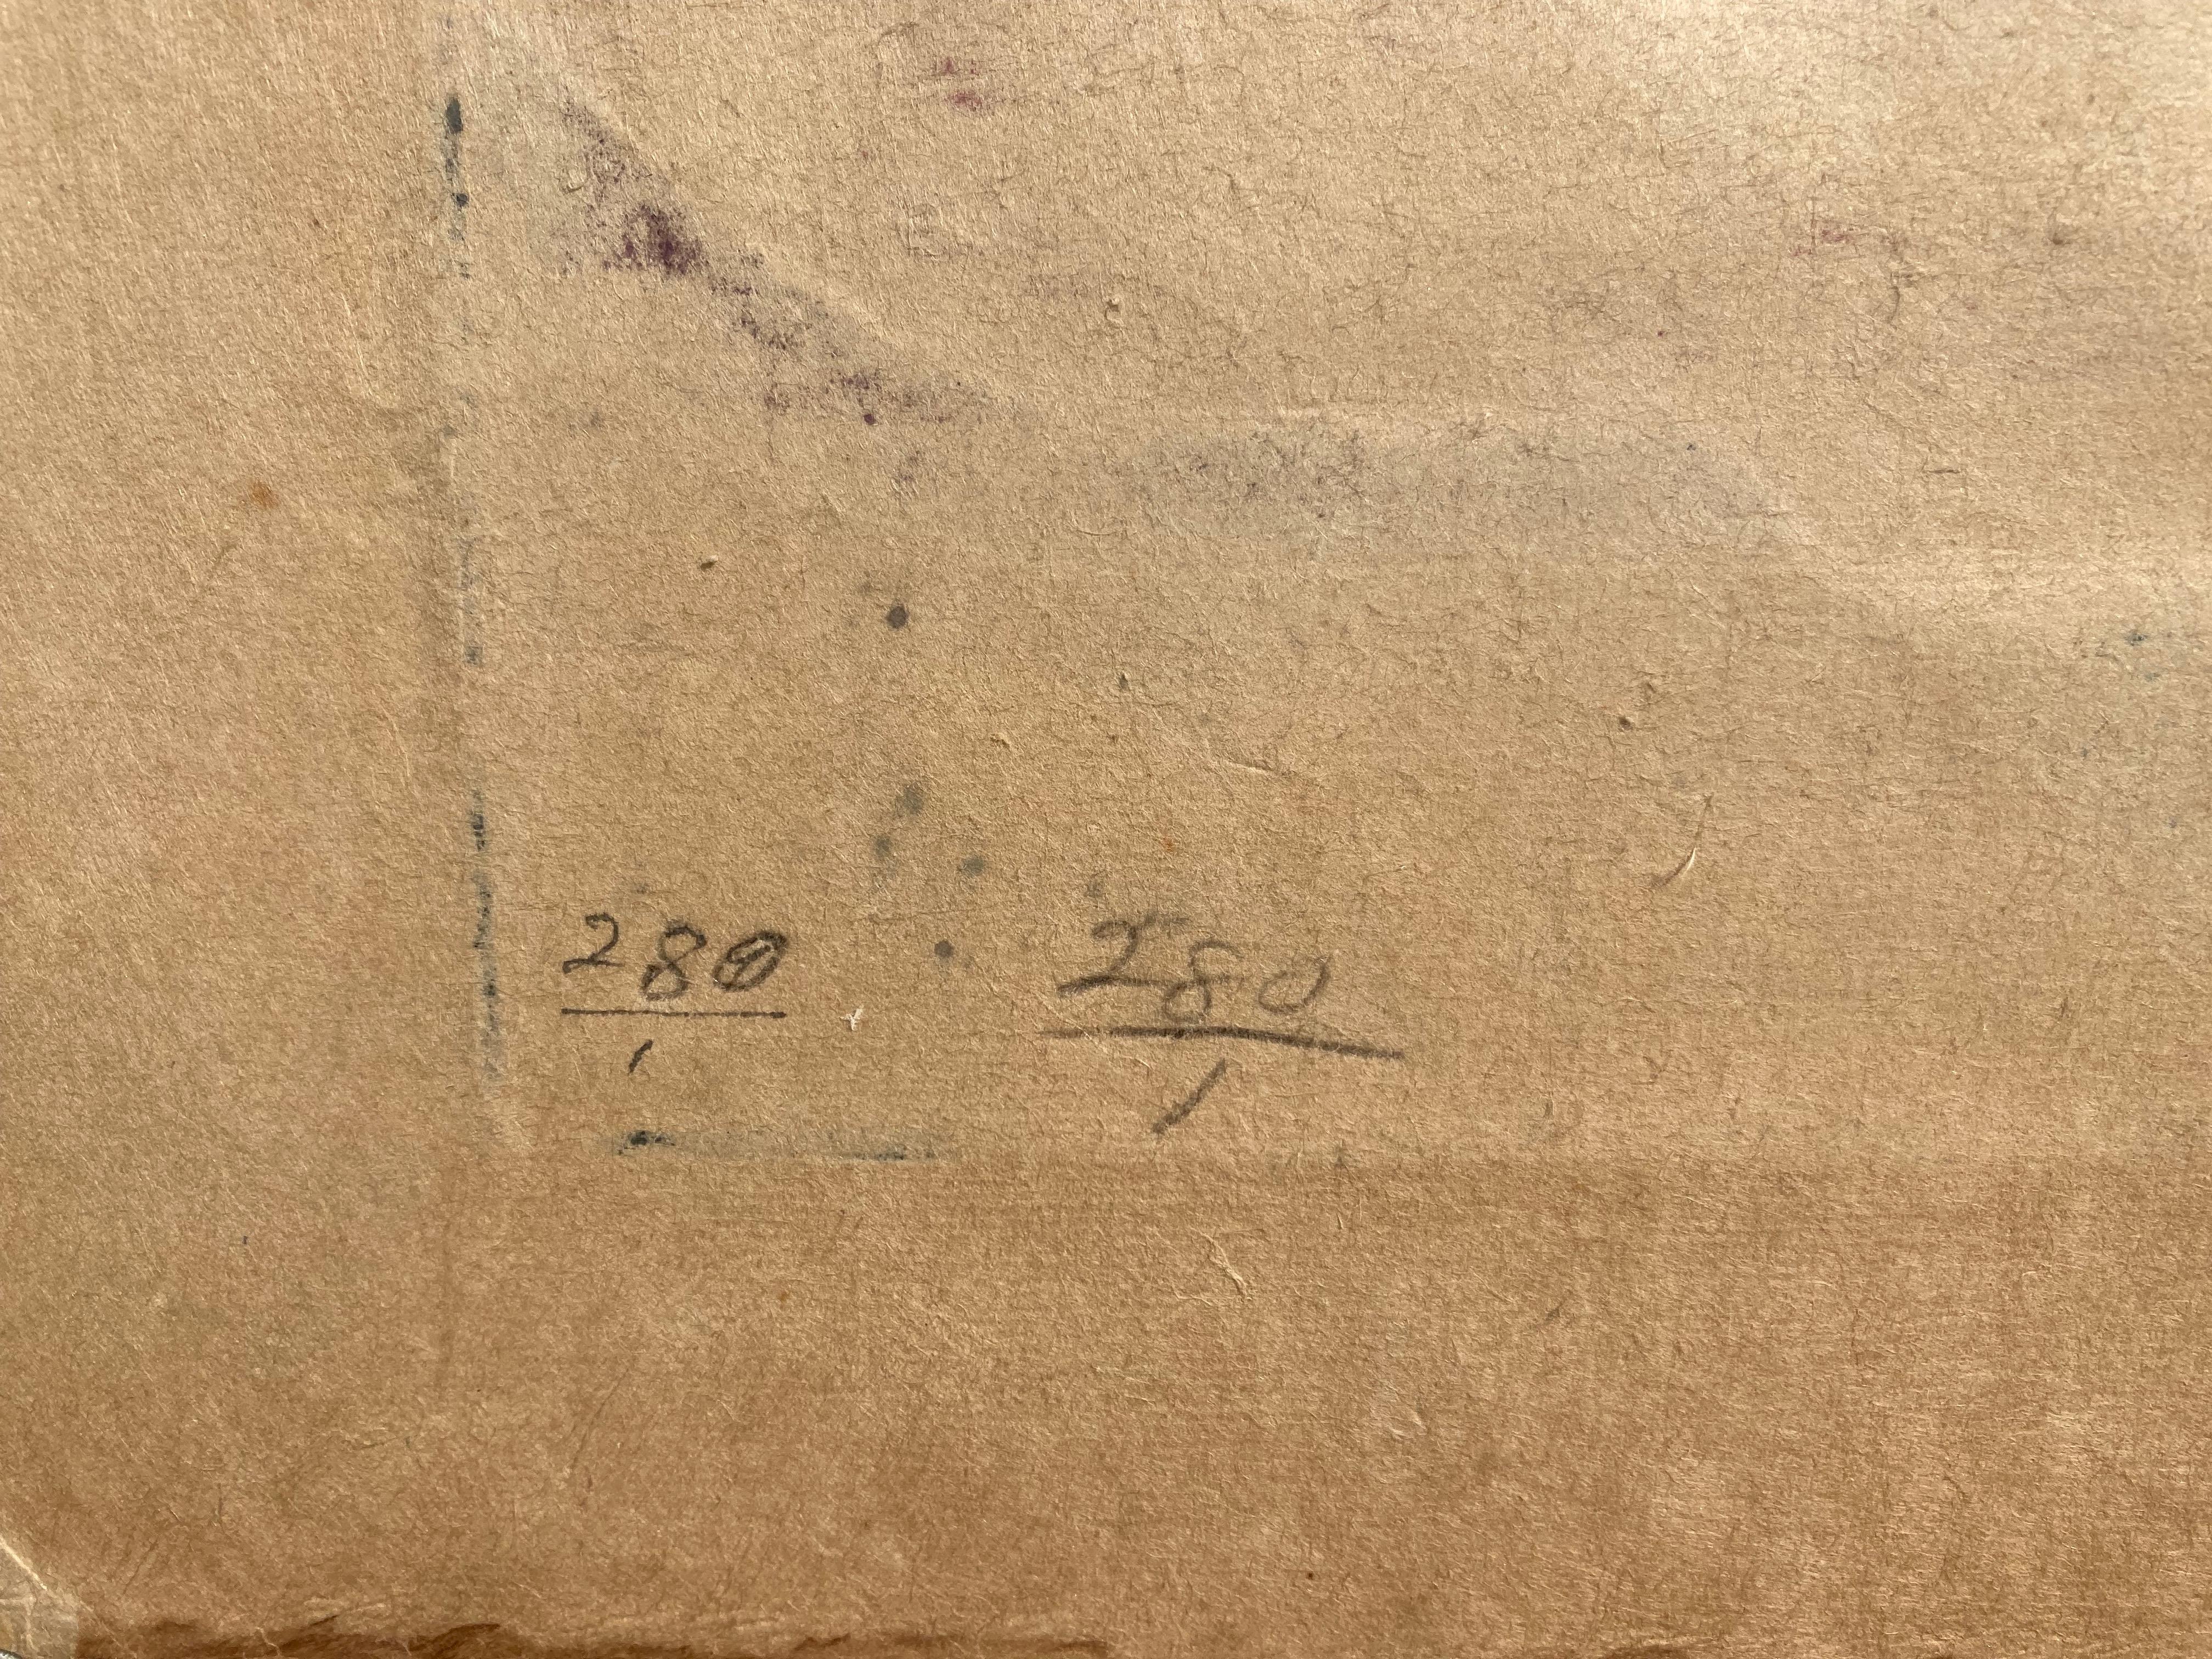 
BLANCHE LAZZELL (1878 - 1956)

STERNPHLOX 1930
Farbholzschnitt nach der Provincetown-Methode mit einem Block. Signiert und betitelt und mit einem Vermerk versehen 
